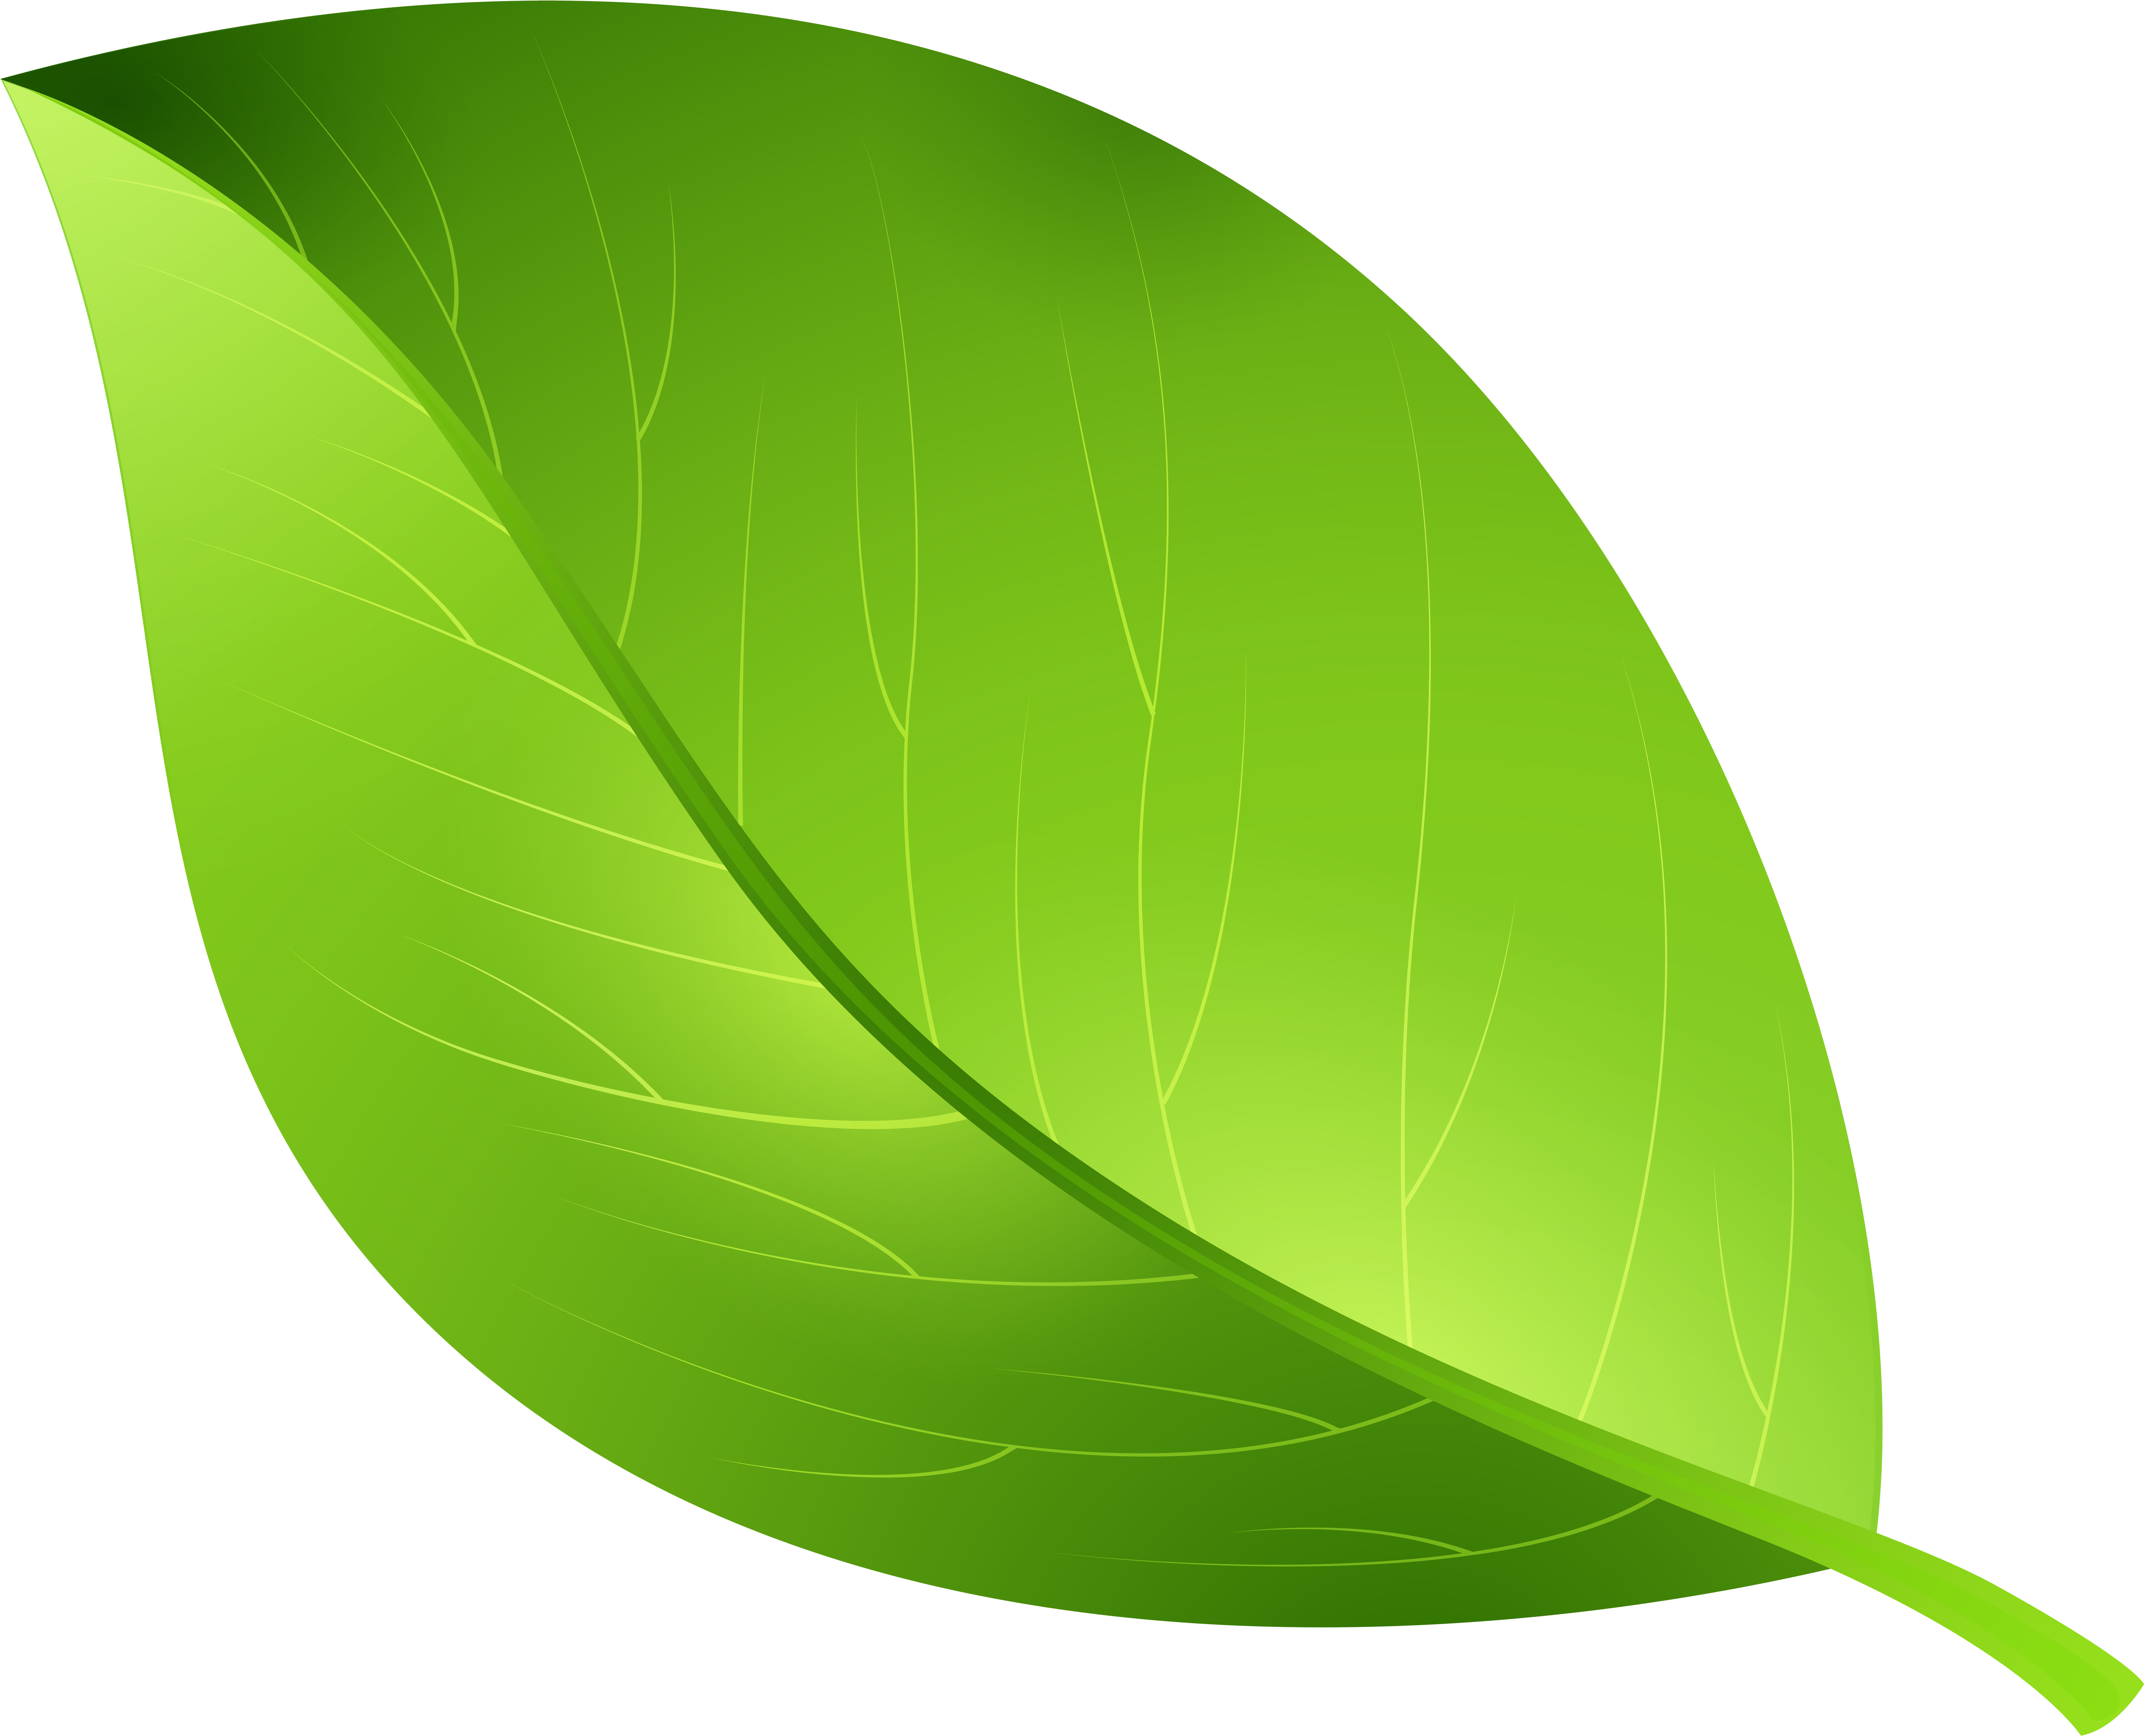 Green Leaf Transparent Png Clip Art Image - Leaf Clipart Transparent Background (600x491), Png Download